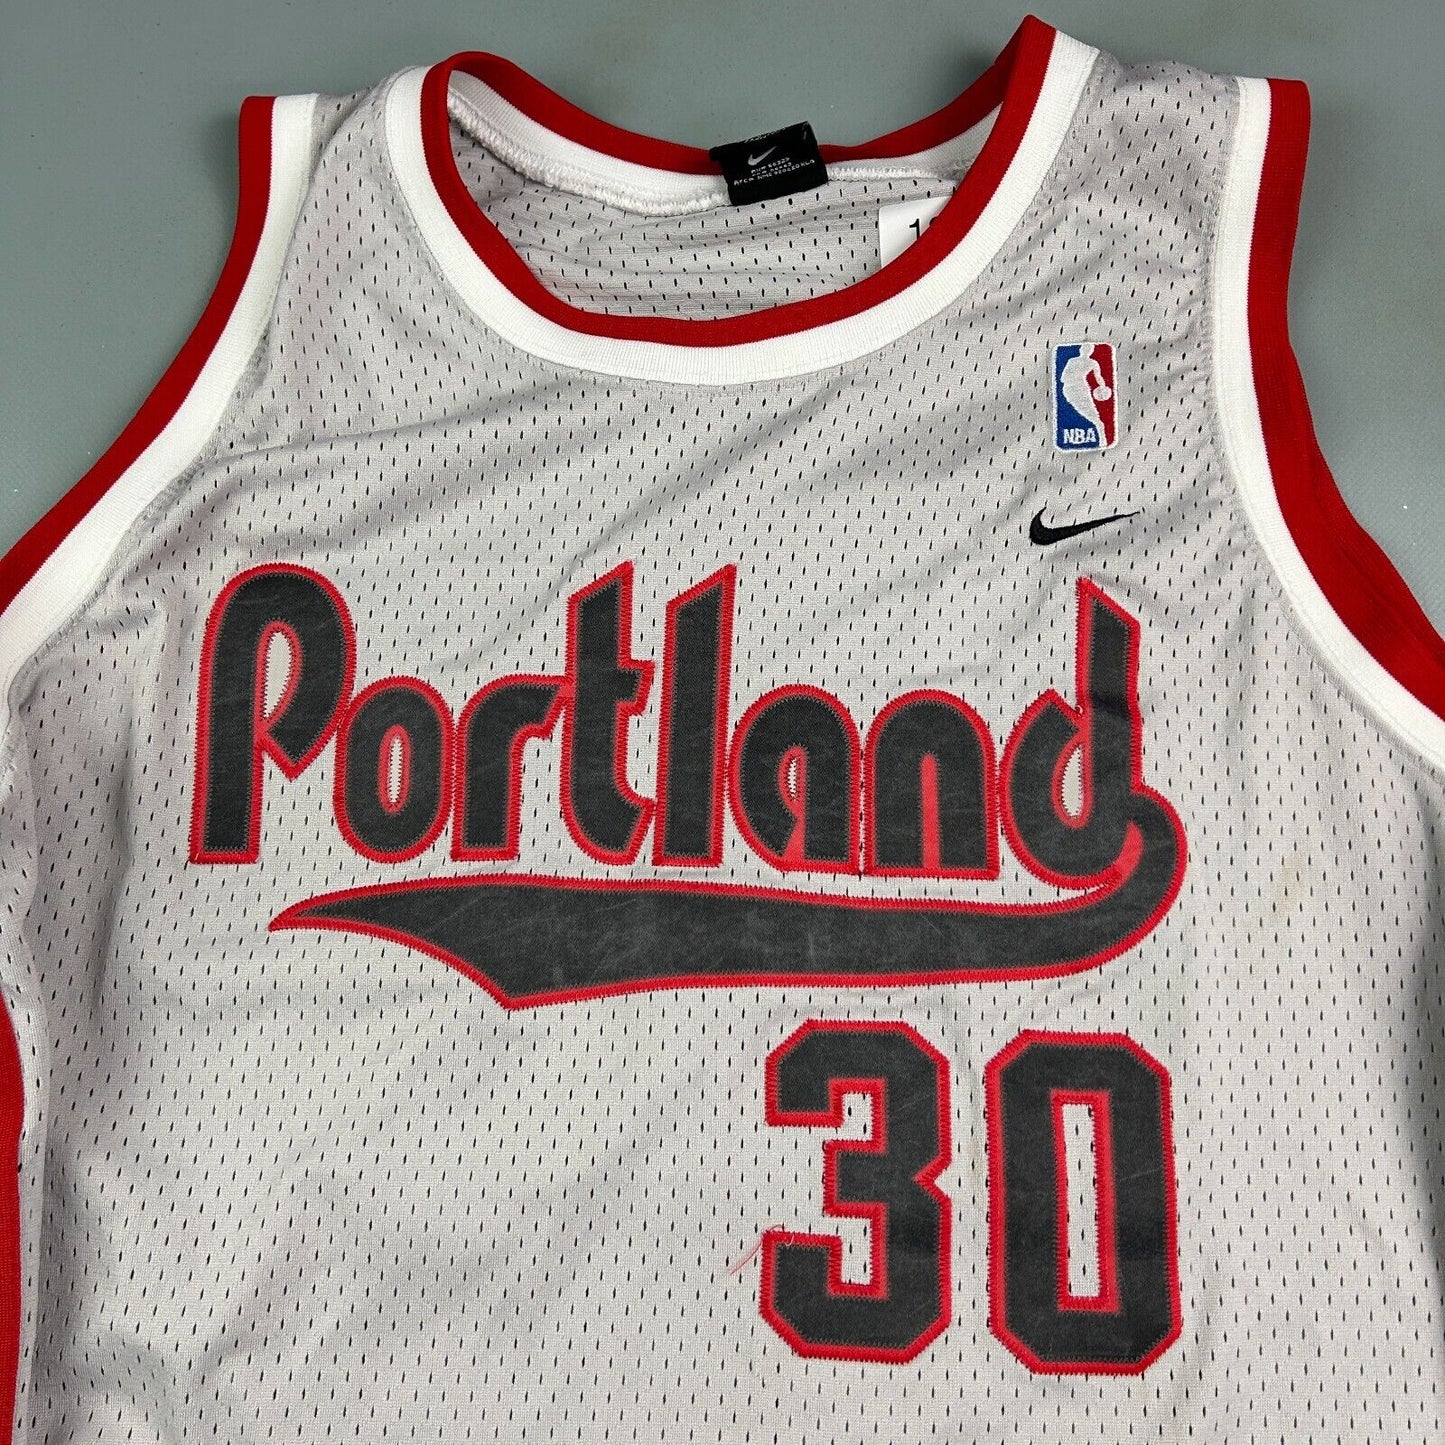 VINTAGE 90s | NIKE Portland Trail Blazers #30 Basketball Jersey sz XXL Adult